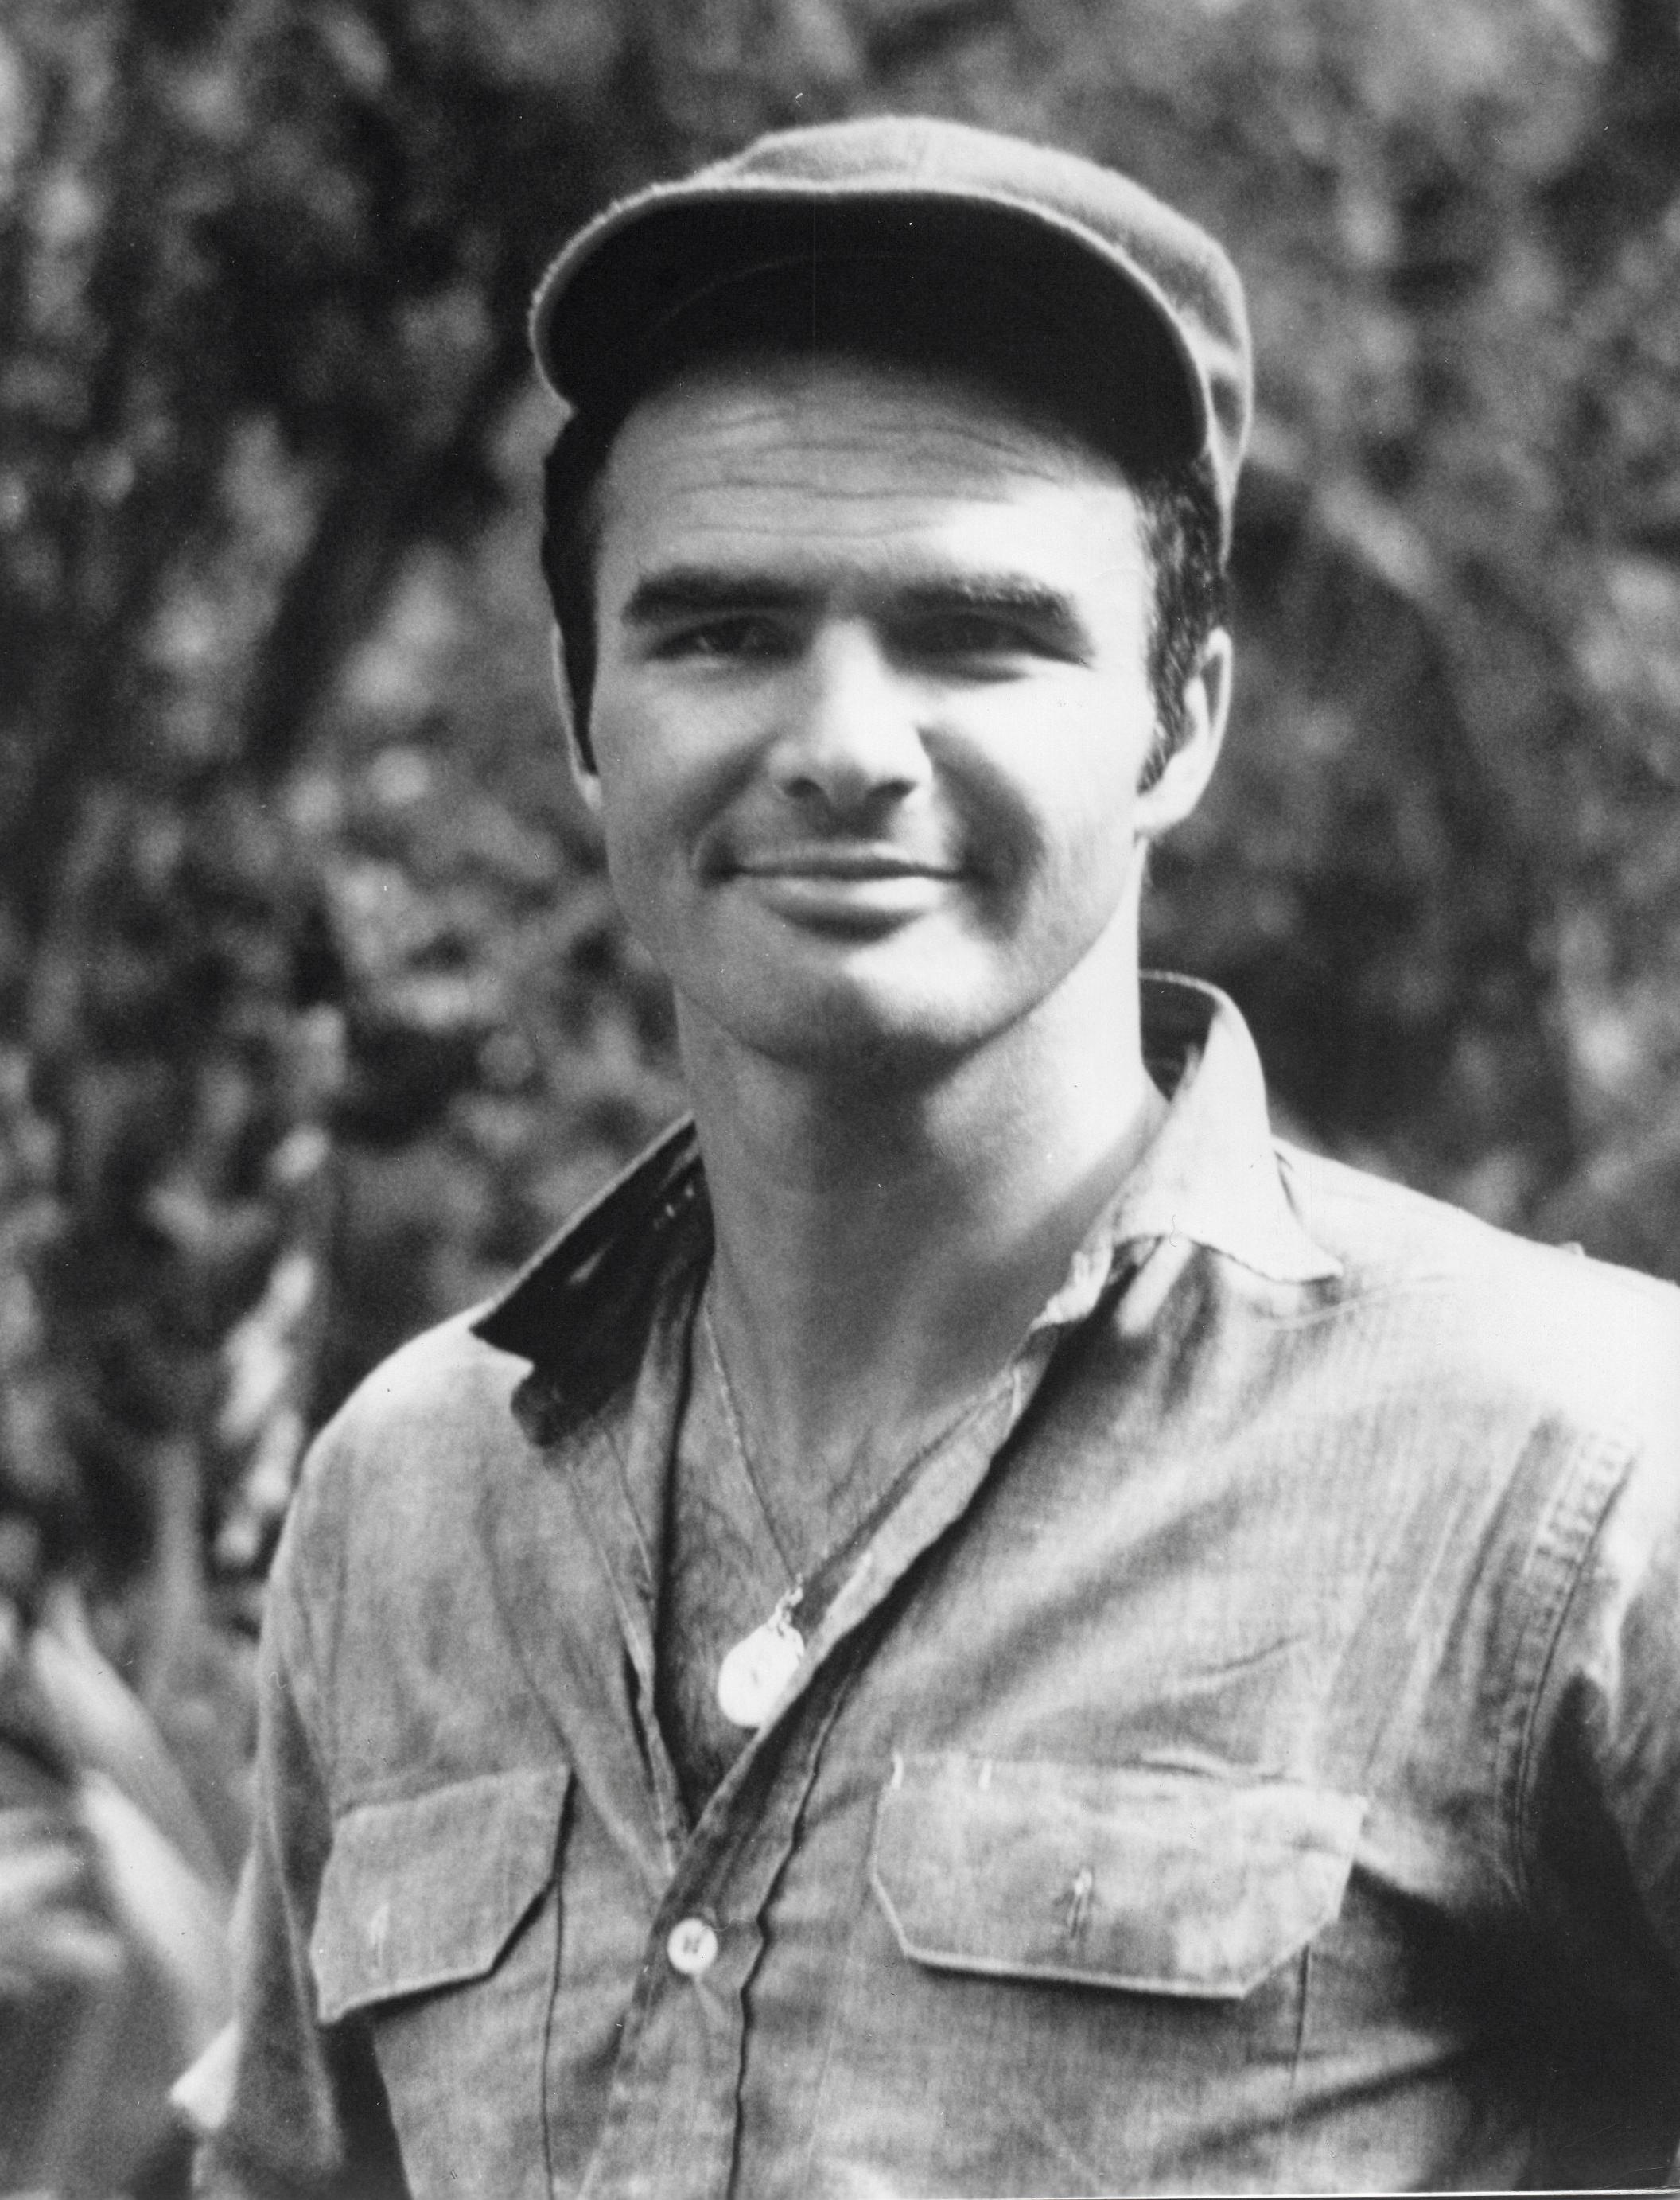 Unknown Portrait Photograph - Burt Reynolds Outdoors Vintage Original Photograph